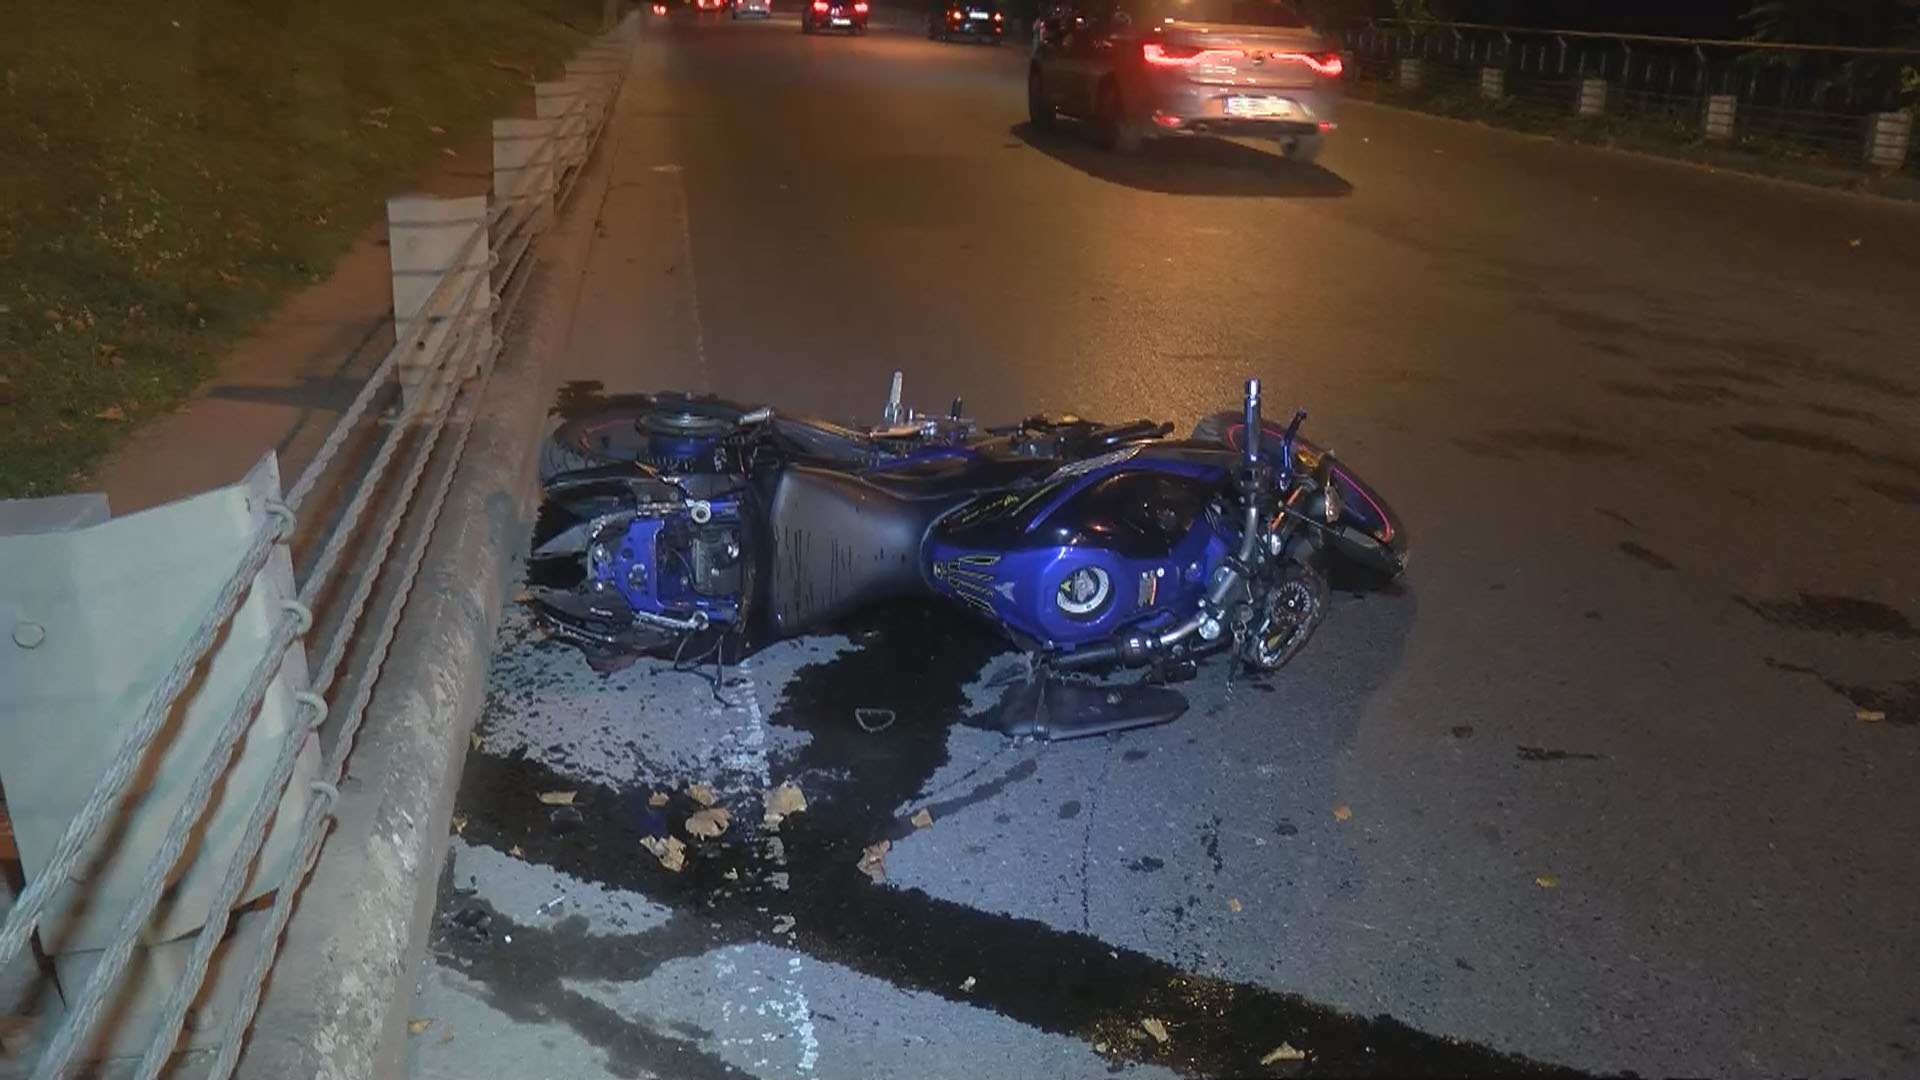 istanbul sariyer de feci motosiklet kazasi 2 olu